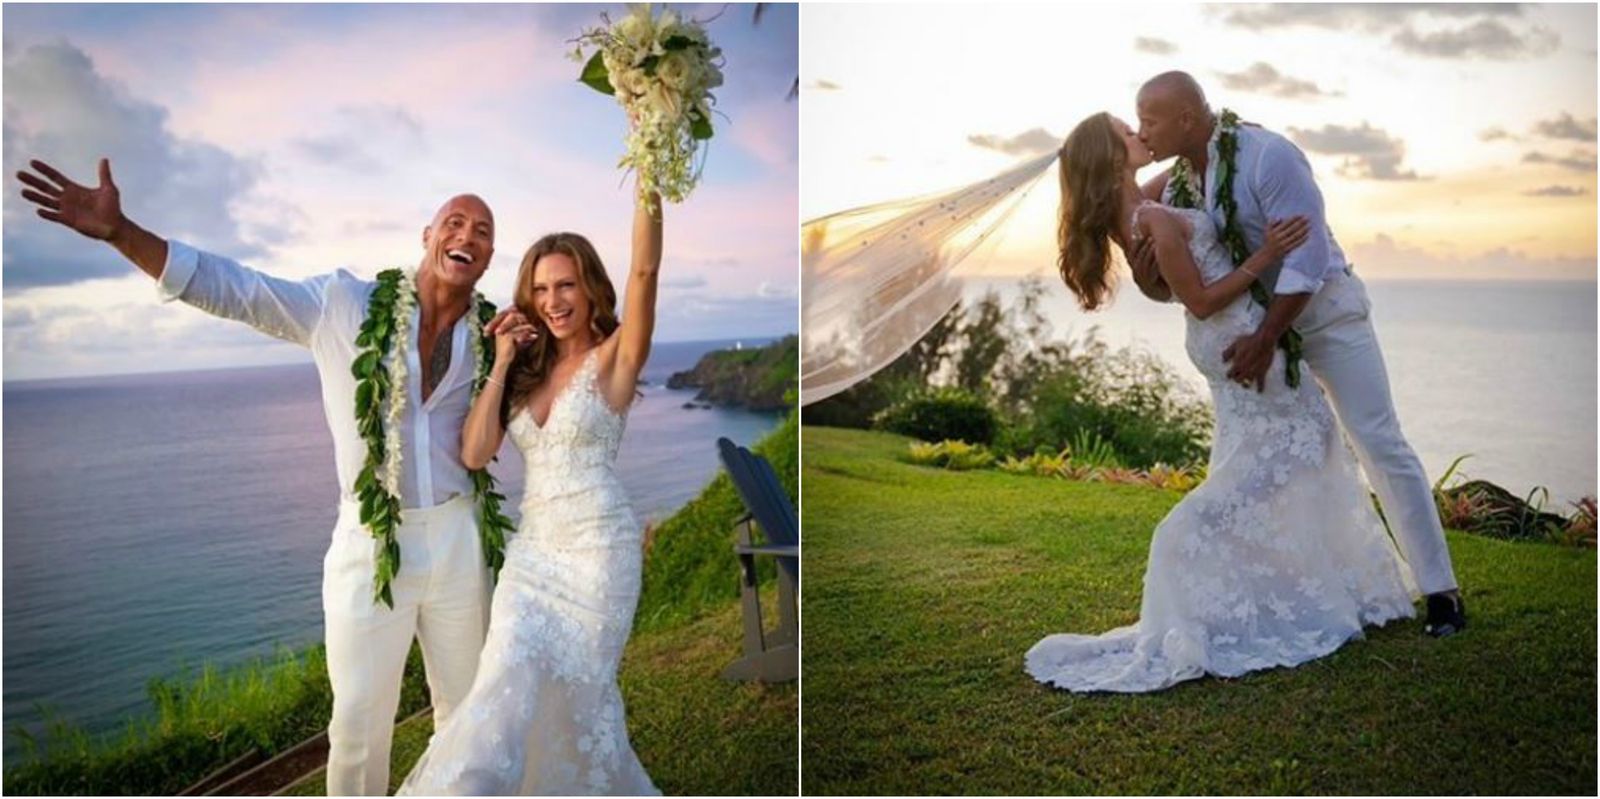 Dwayne ‘The Rock’ Johnson Gets Married To Girlfriend Lauren Hashian In Hawaii